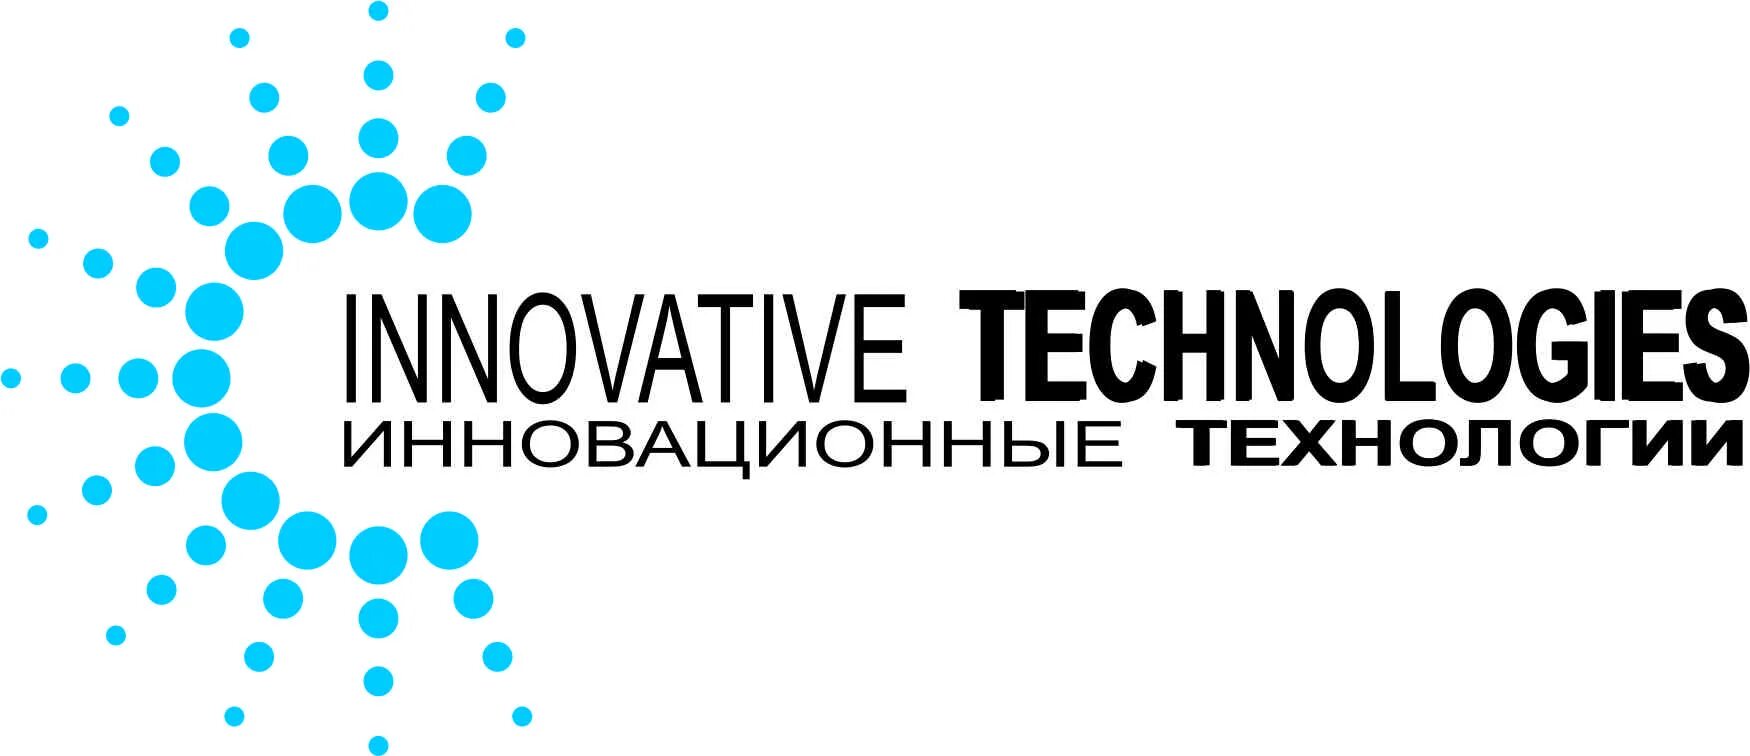 Инновационные технологии logo. Инновационные технологии эмблема. Инновации и технология лого. Новые технологии логотип. Лого технологии